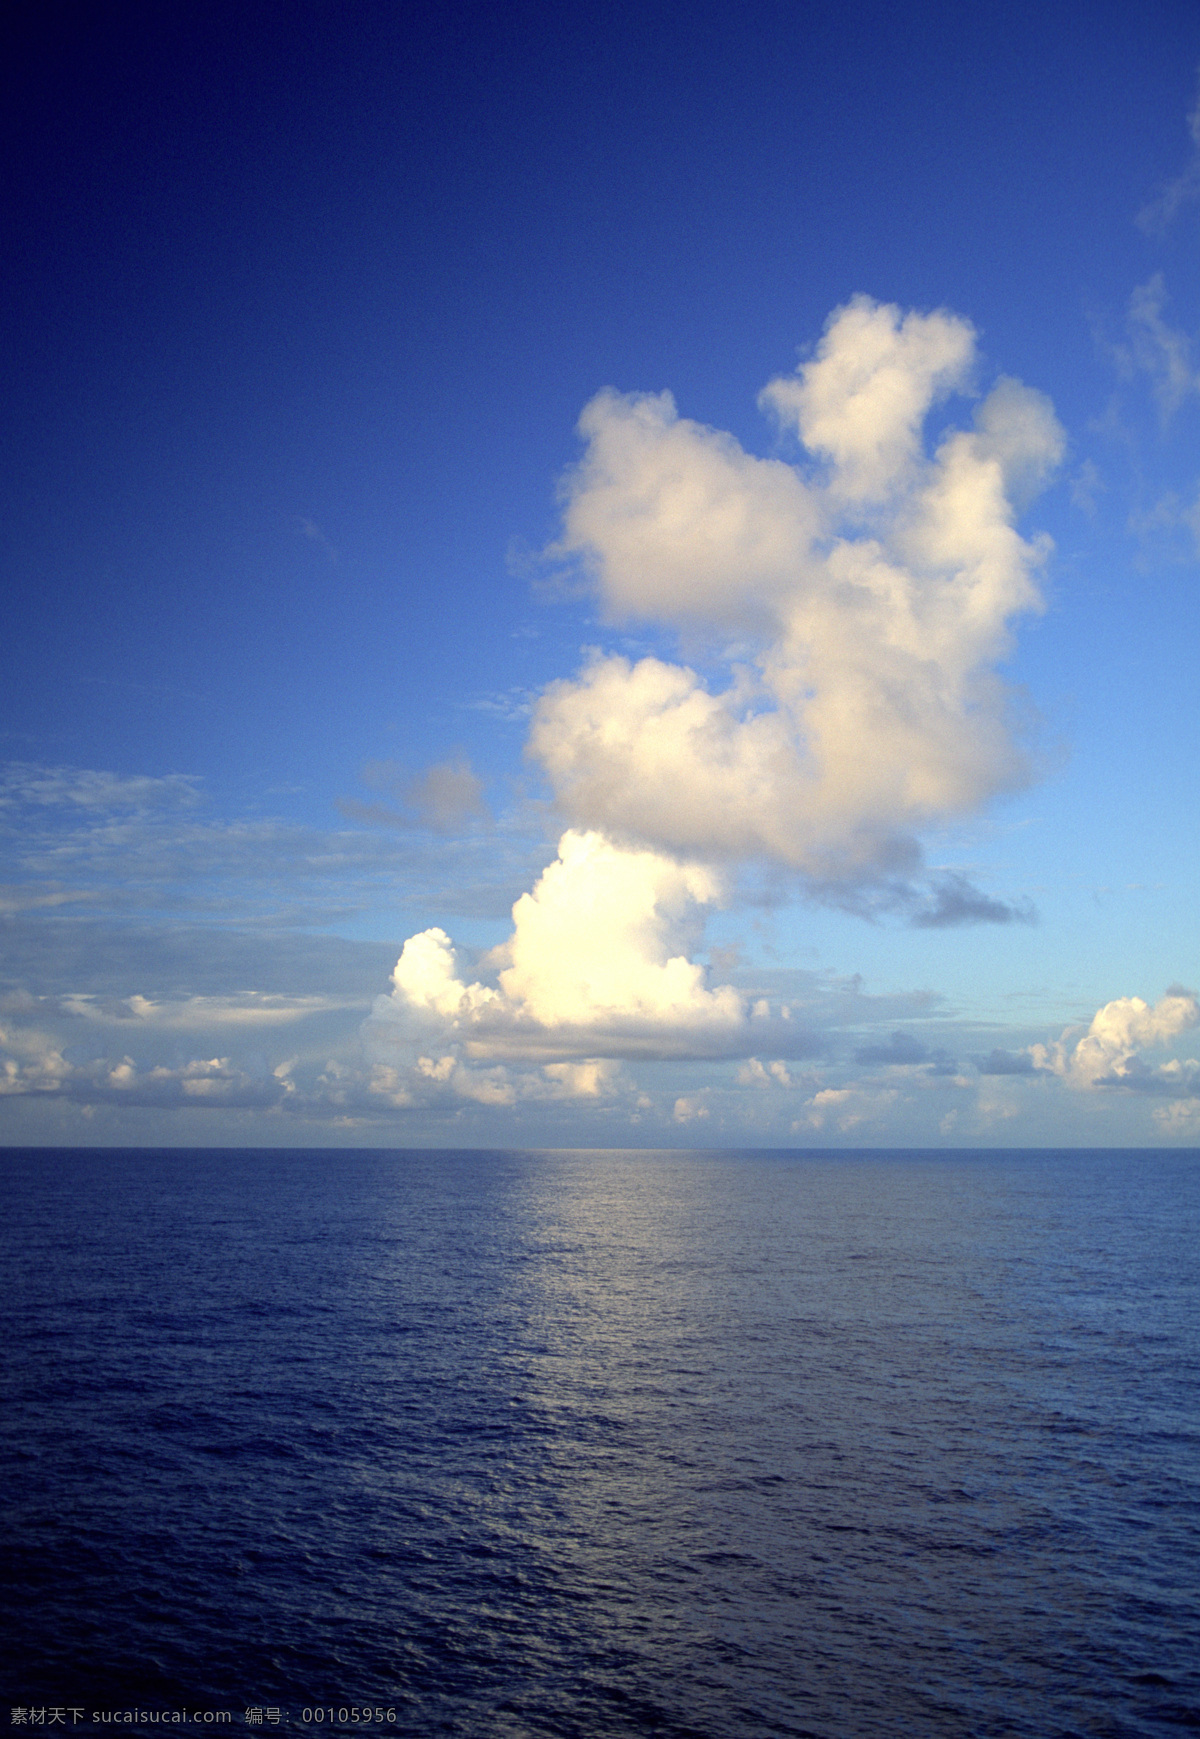 美丽 海面 风光 高清 美丽海滩 海边风景 蓝天白云 海平面 大海 海洋 海景 景色 美景 风景 摄影图 高清图片 海洋海边 自然景观 蓝色